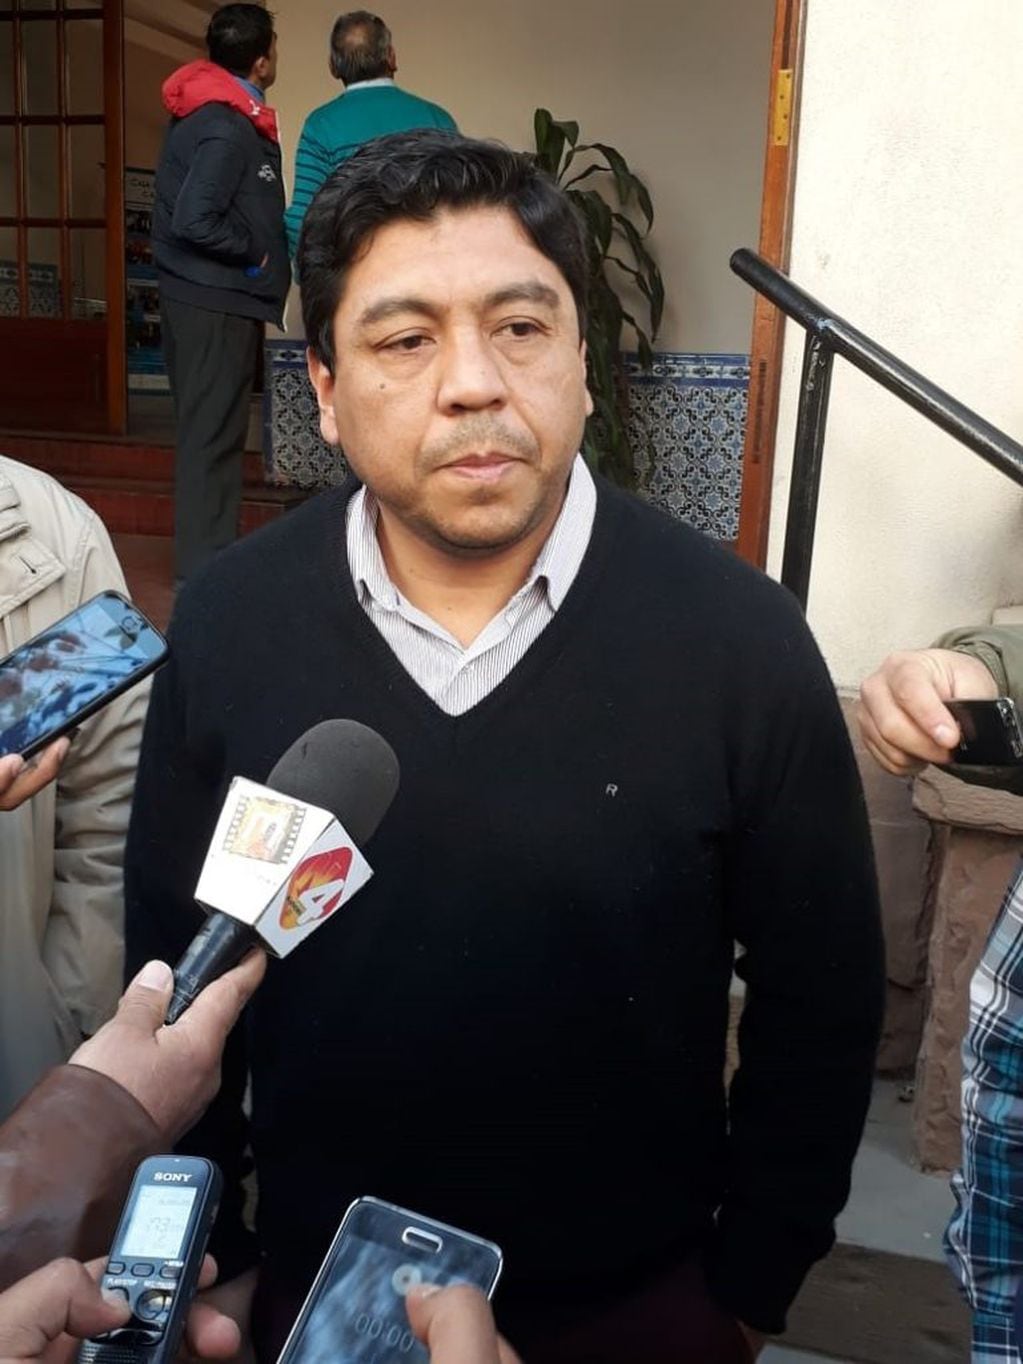 El intendente Adrián Mendieta, en diálogo con los medios a la salida del Juzgado.